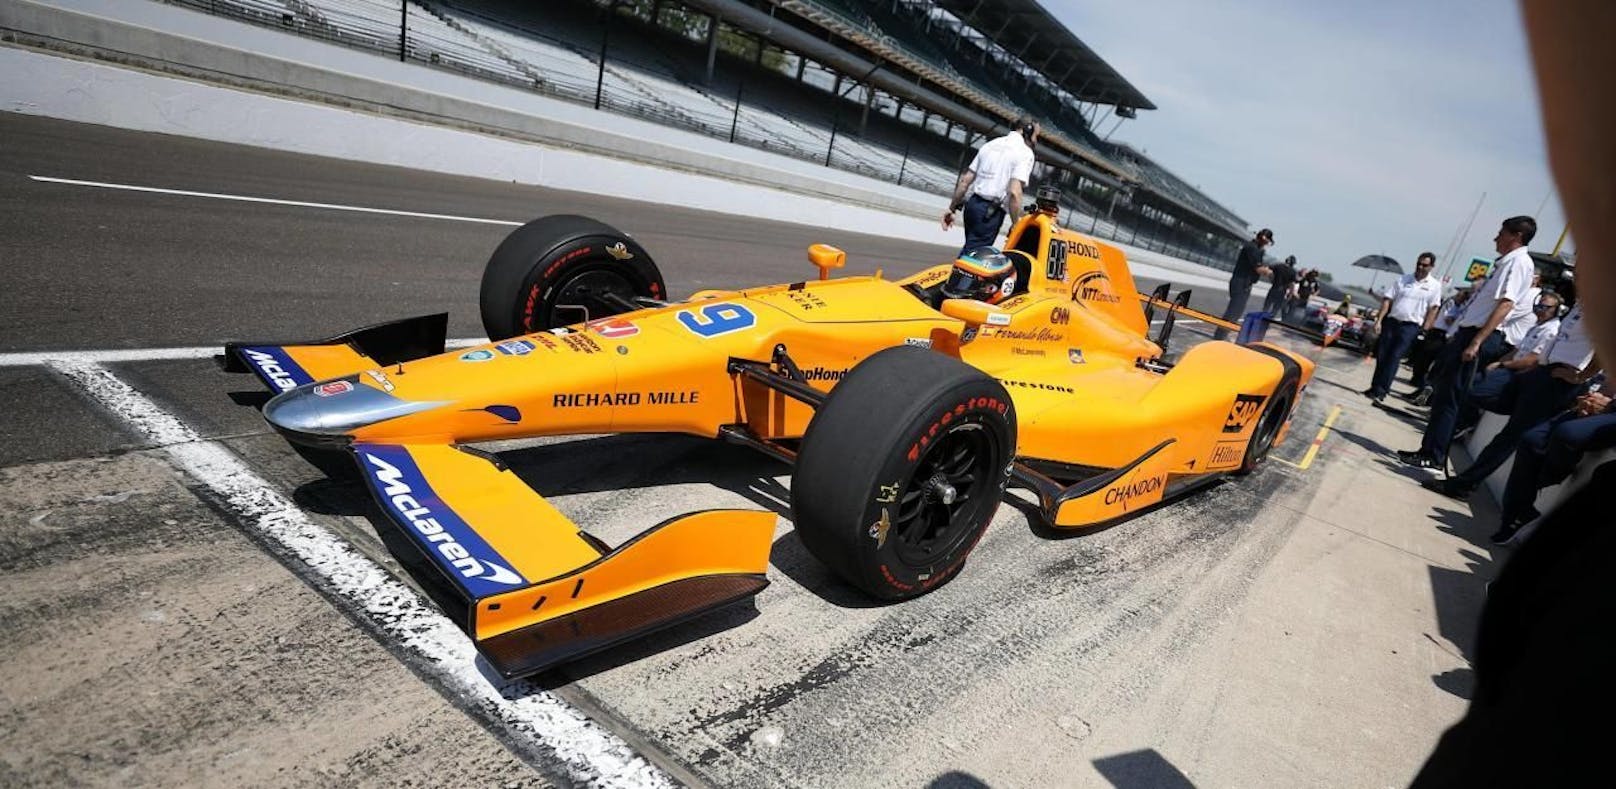 Alonso bei Indy 500 auf Anhieb schnellster Rookie